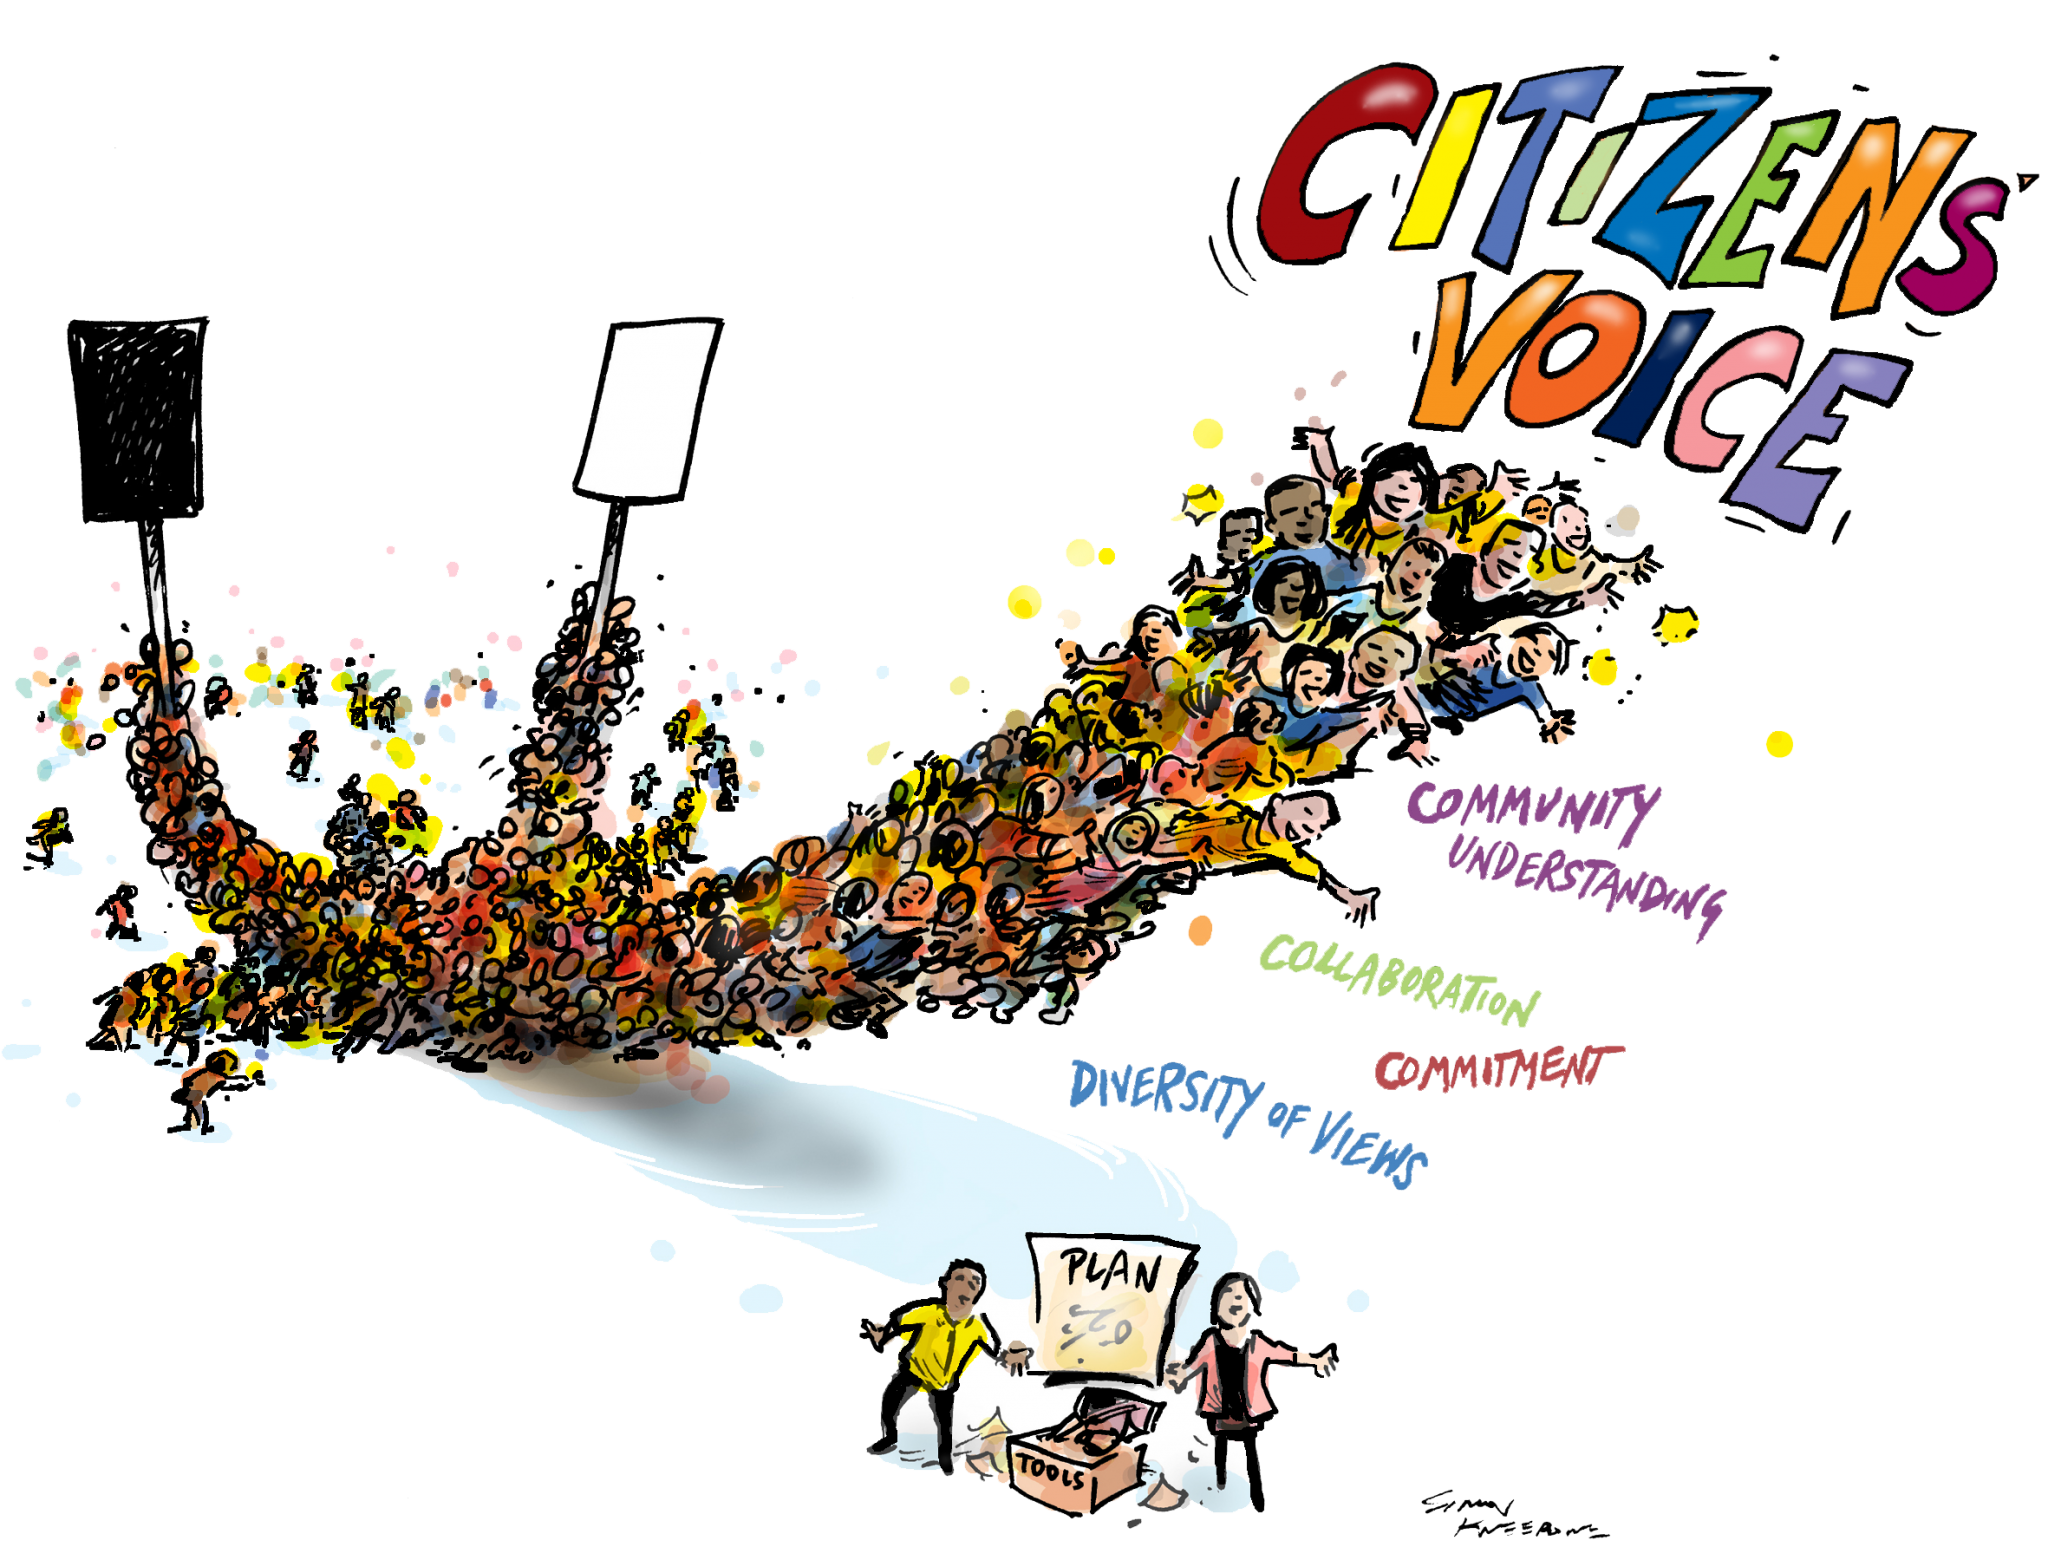 citizens voice obit